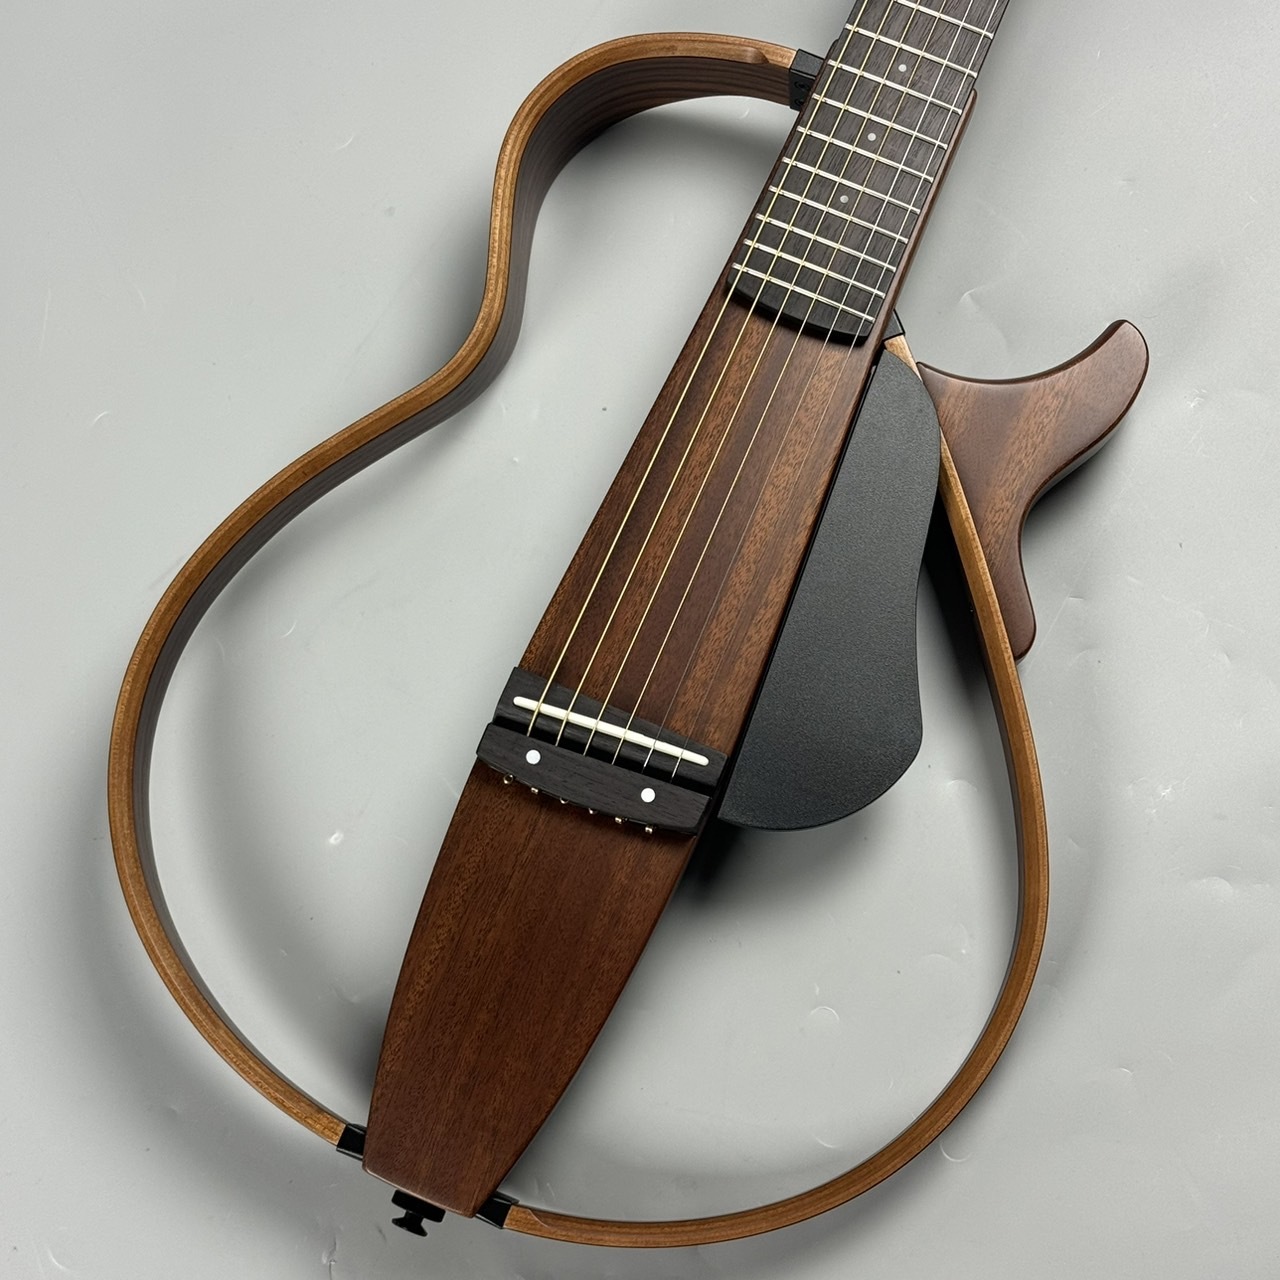 YAMAHA SLG200S NT (ナチュラル) スチール弦モデル サイレントギター 